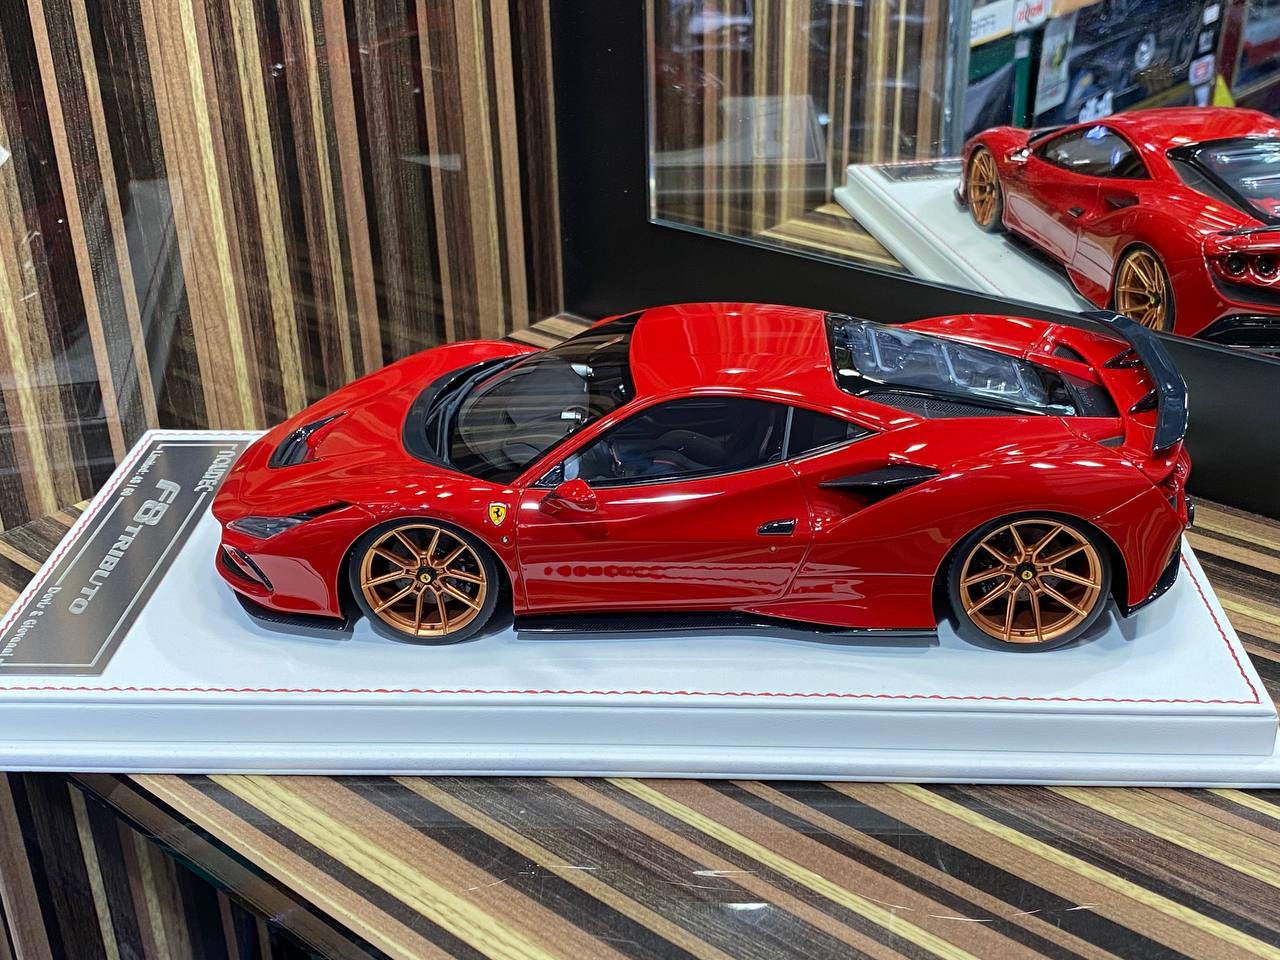 1/18 Davis & Giovanni Ferrari F8 Tributo Limited Edition (60pcs) Red|Sold in Dturman.com Dubai UAE.